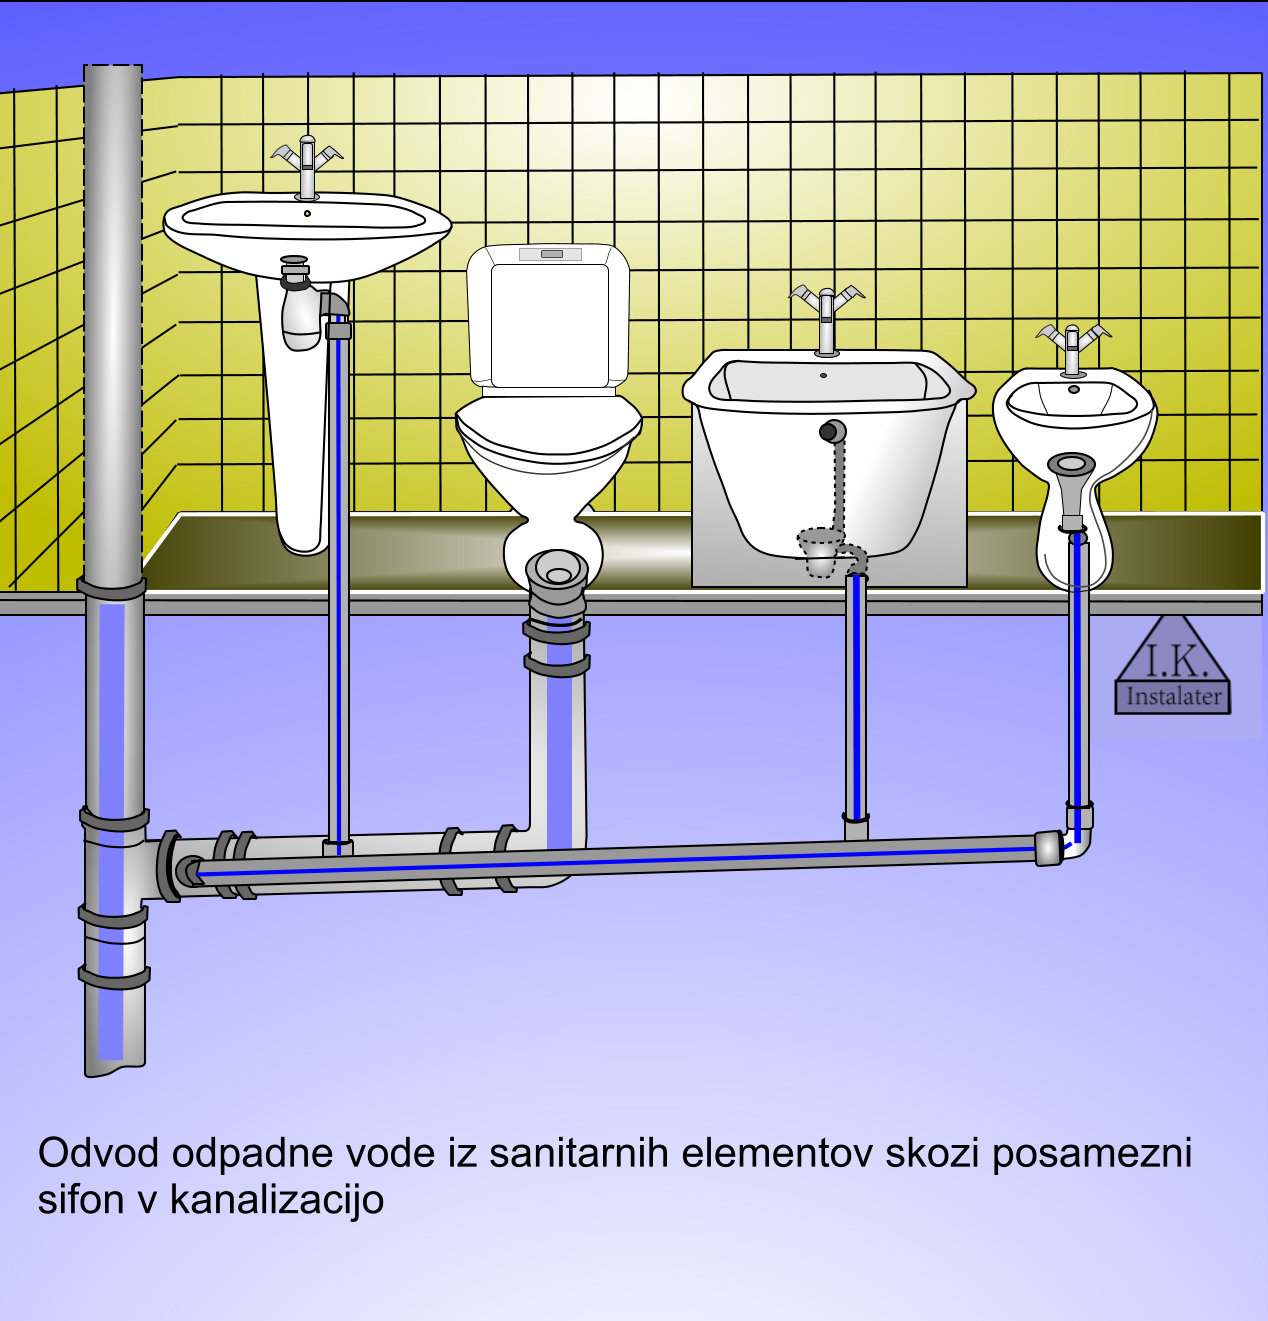 Odvod odpadne vode iz sanitarnih elementov skozi skupni sifon v kanalizacijo-_1